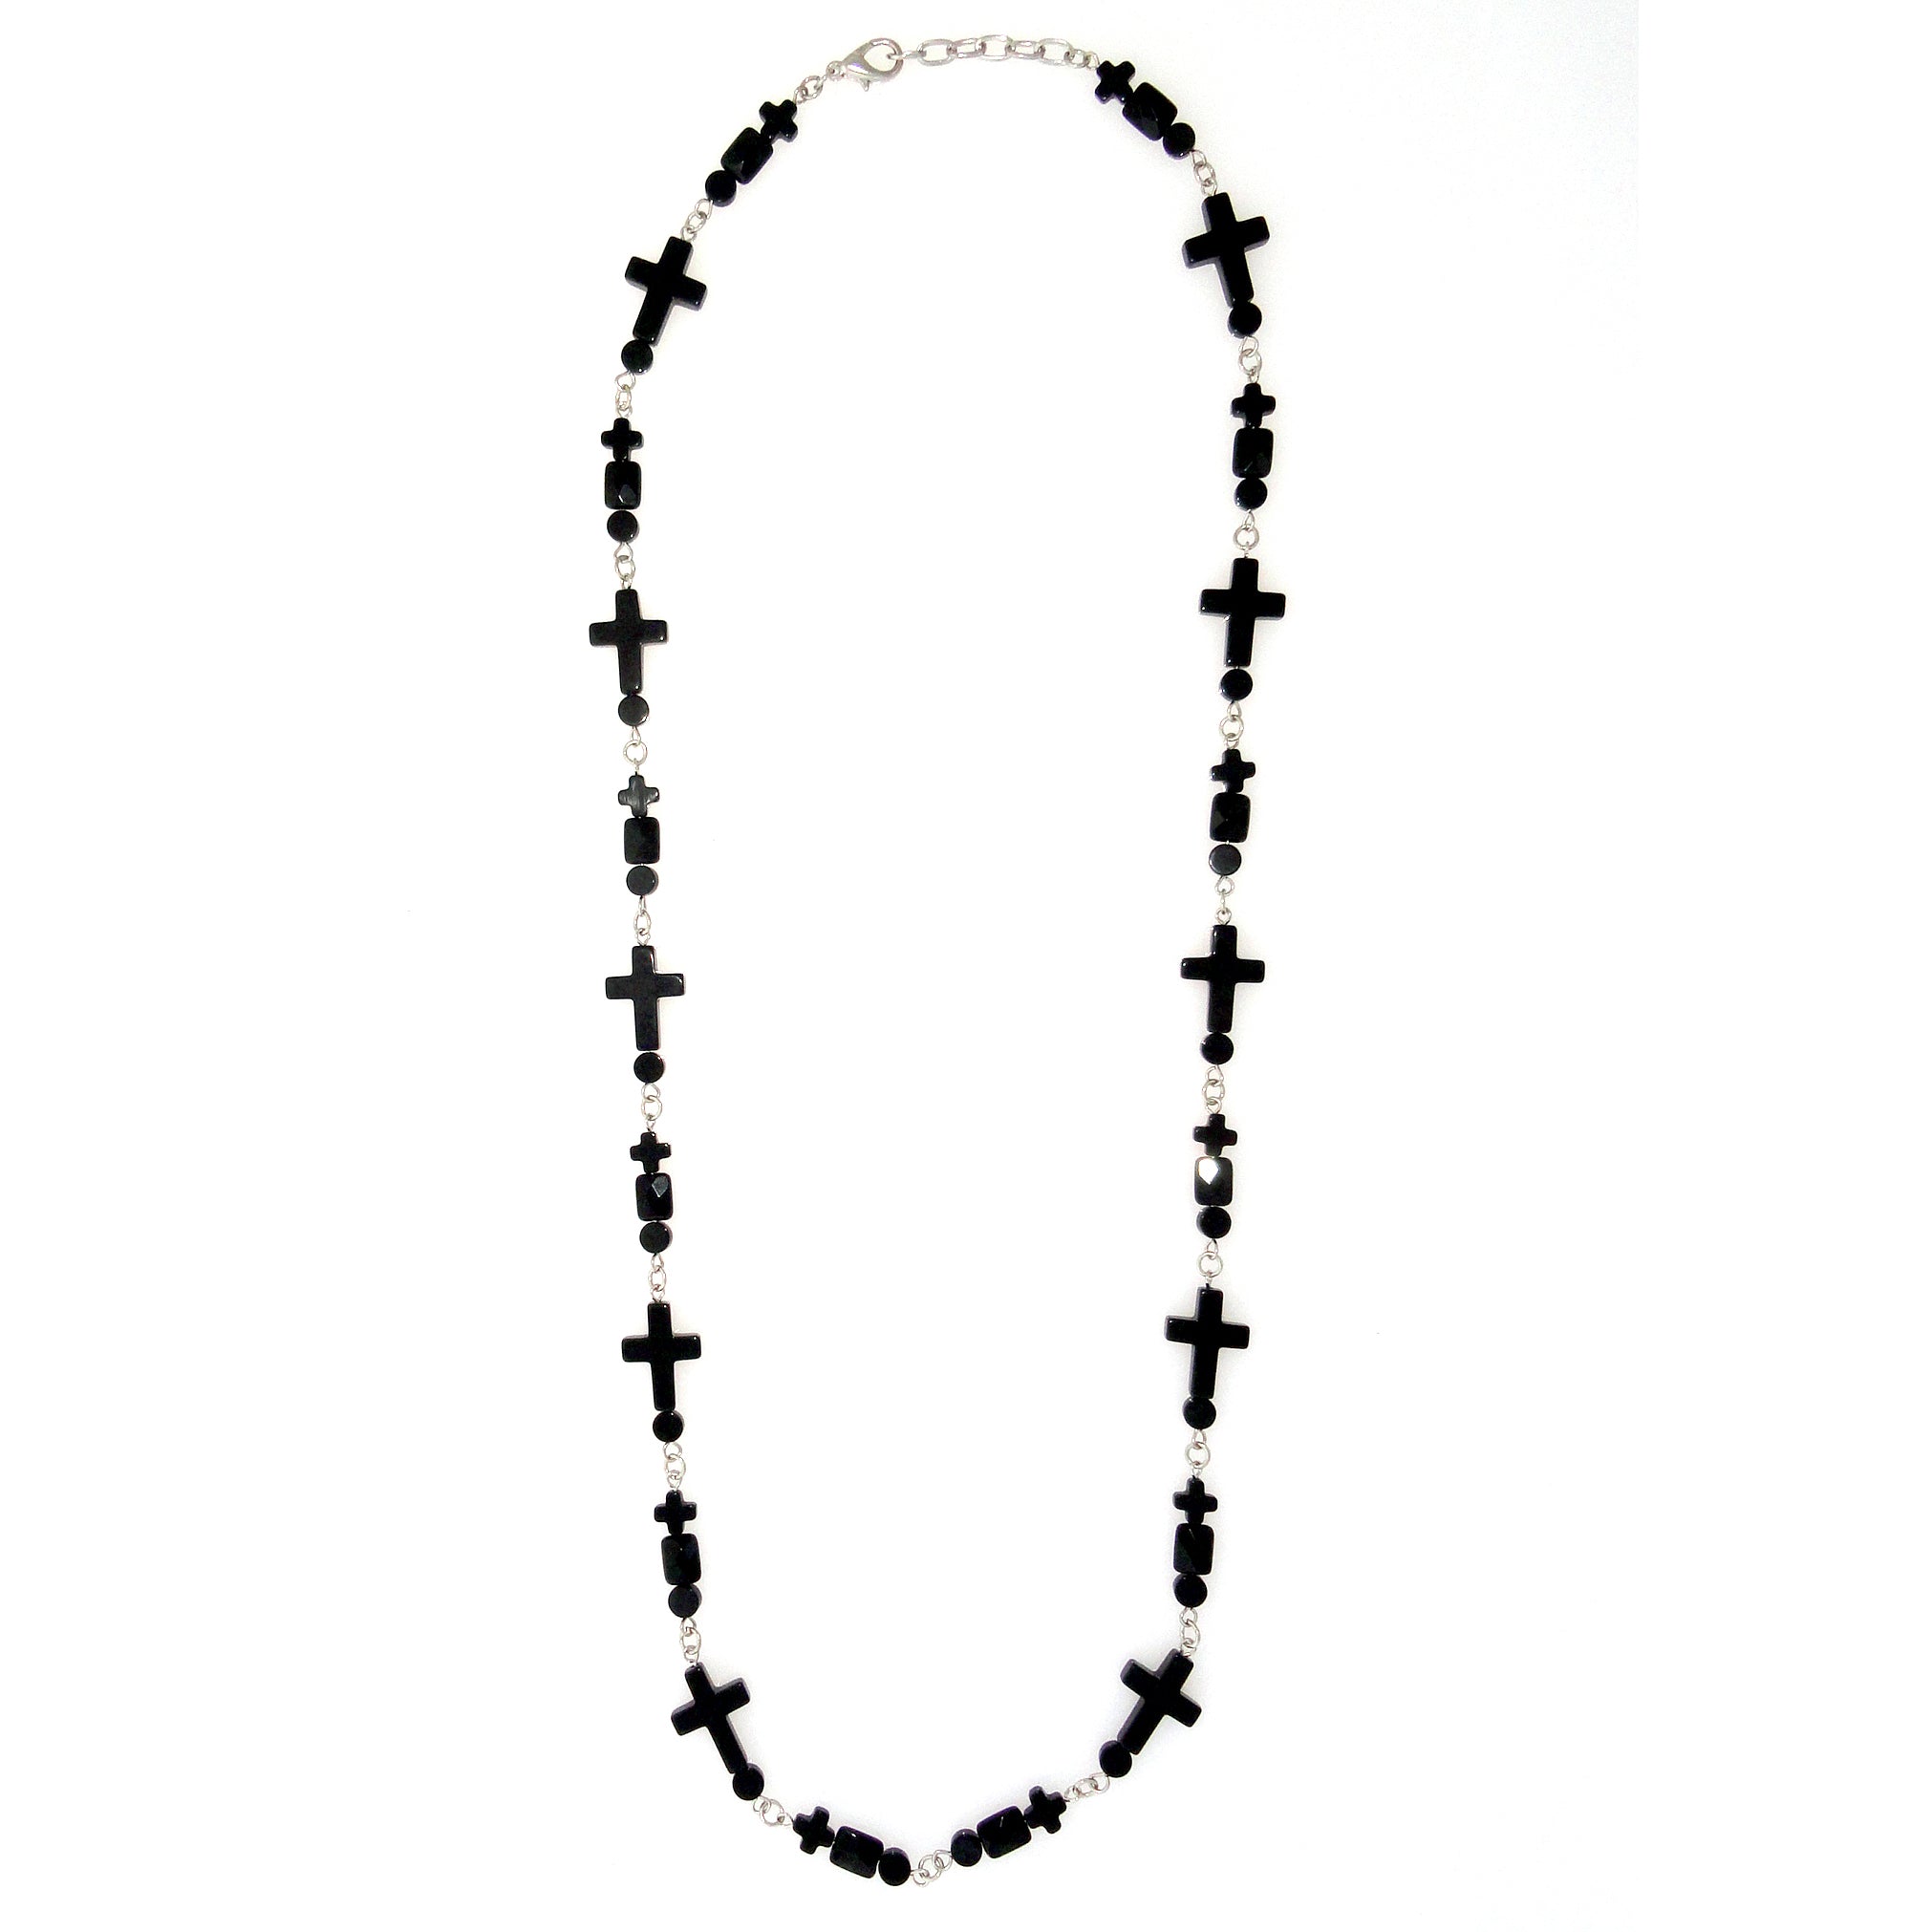 Black onyx cross necklace by Jenny Dayco